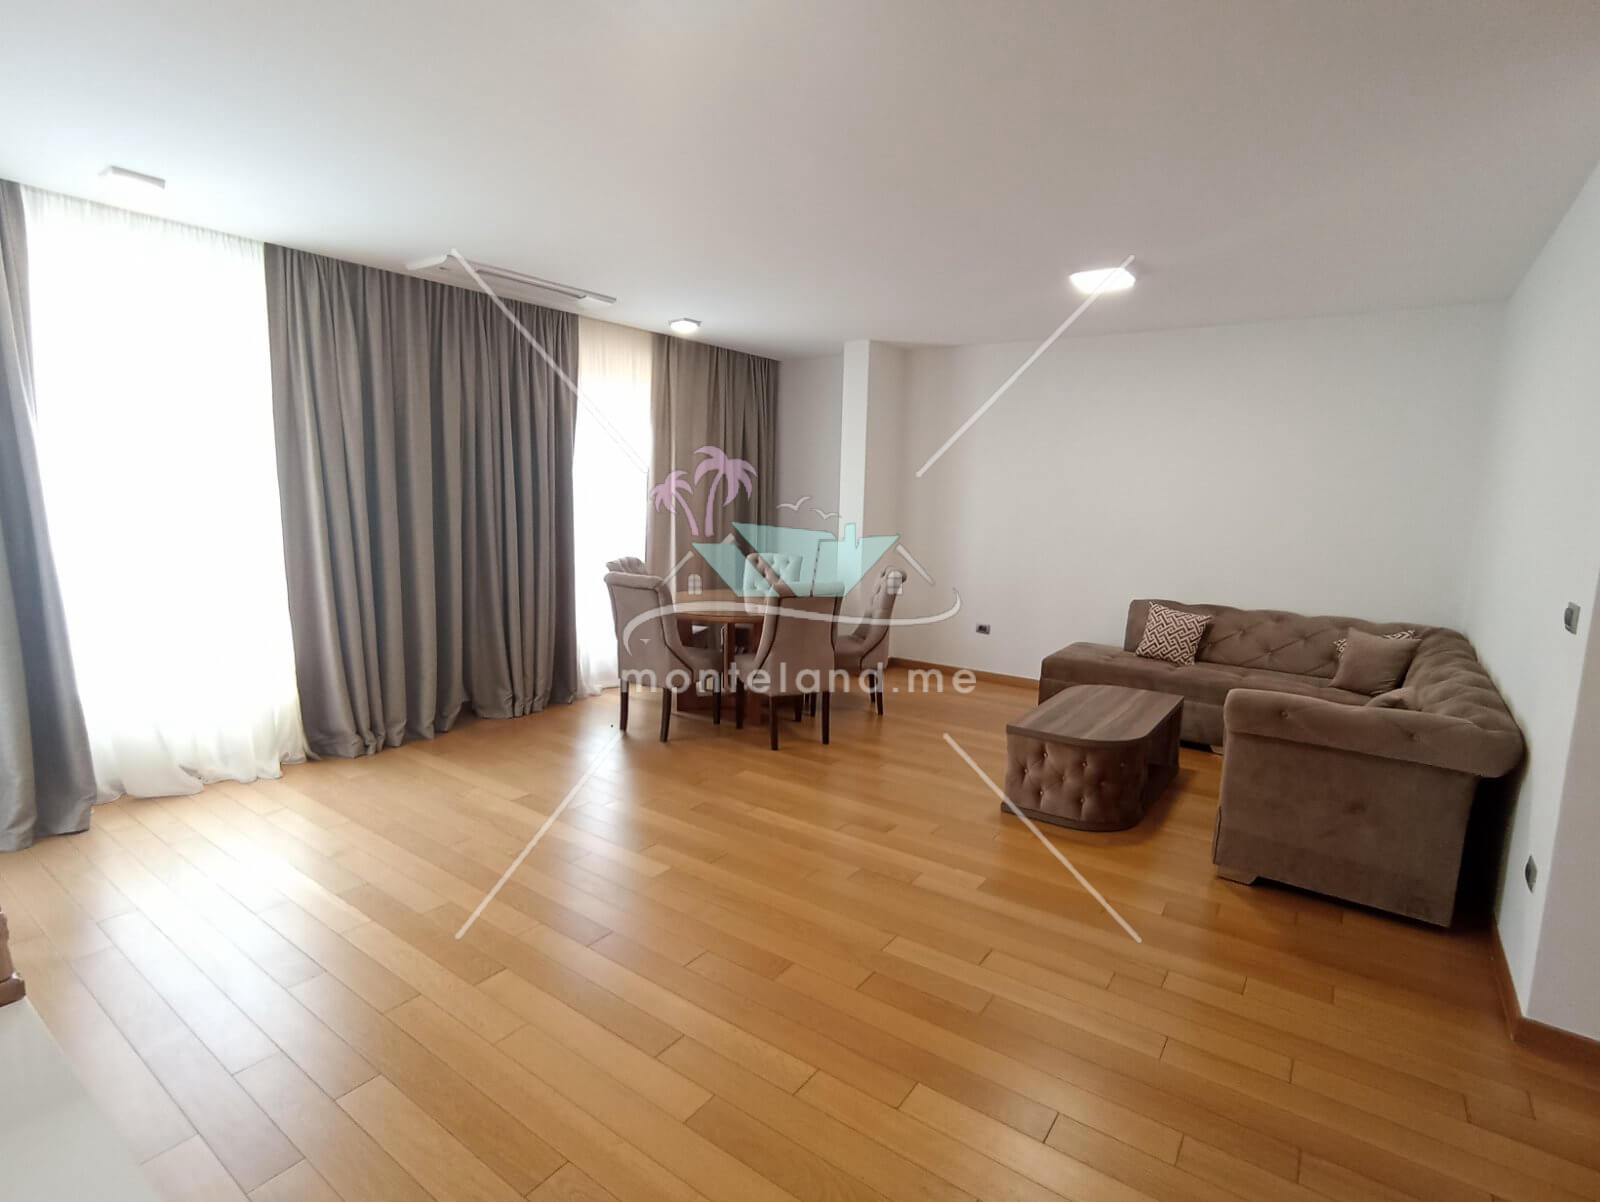 Квартира, Долгосрочная аренда, PODGORICA, CENTAR, Черногория, 119M, Цена - 2000€